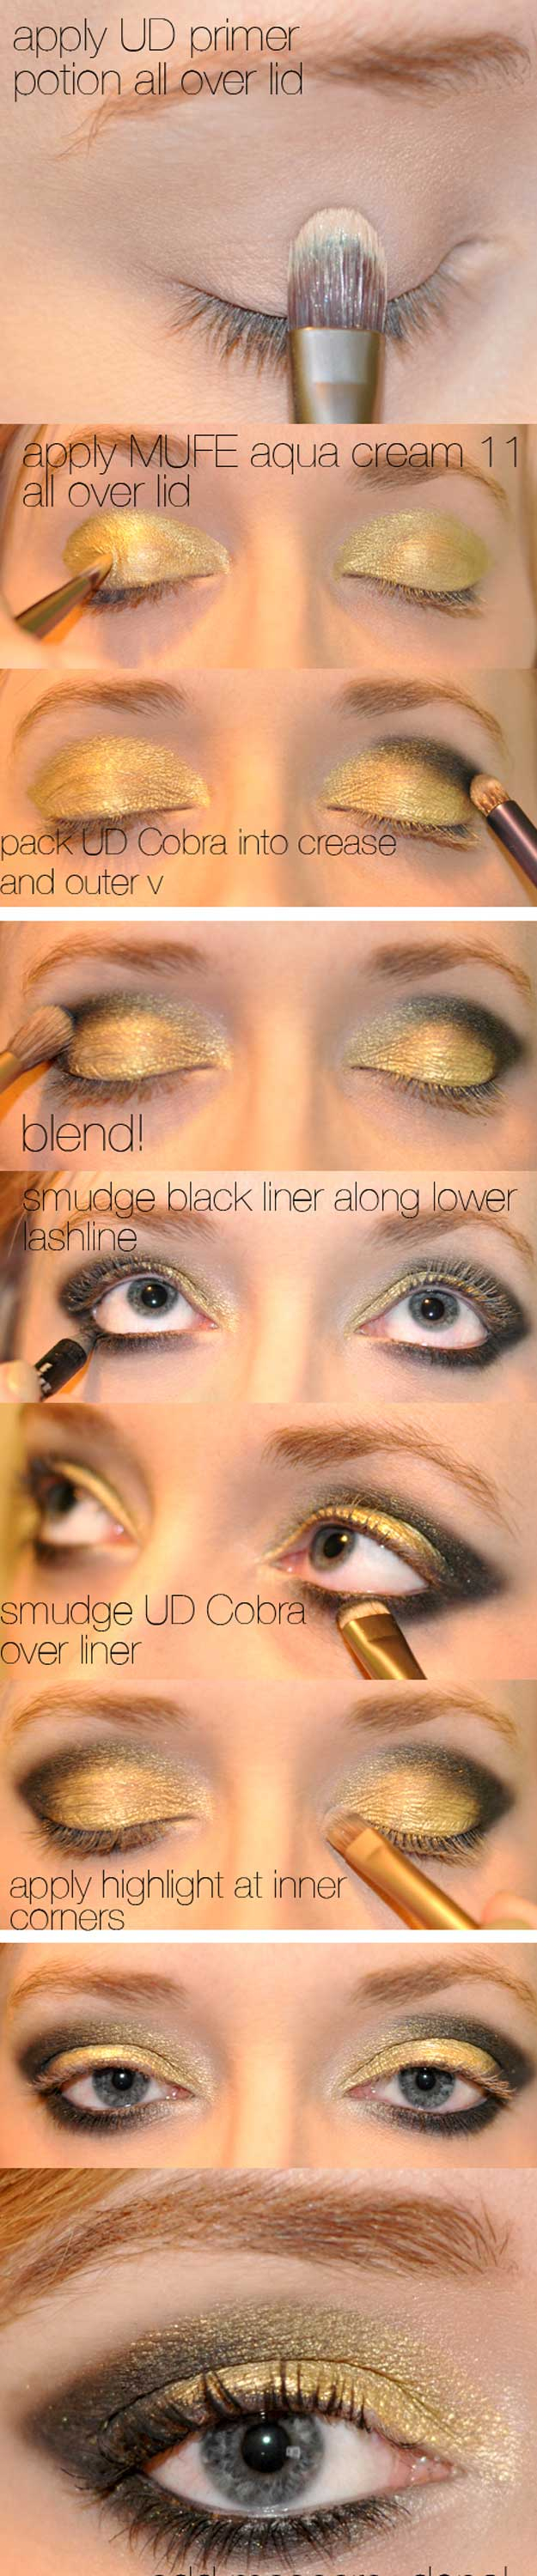 Yellow And Black Eye Makeup 35 Glitter Eye Makeup Tutorials The Goddess